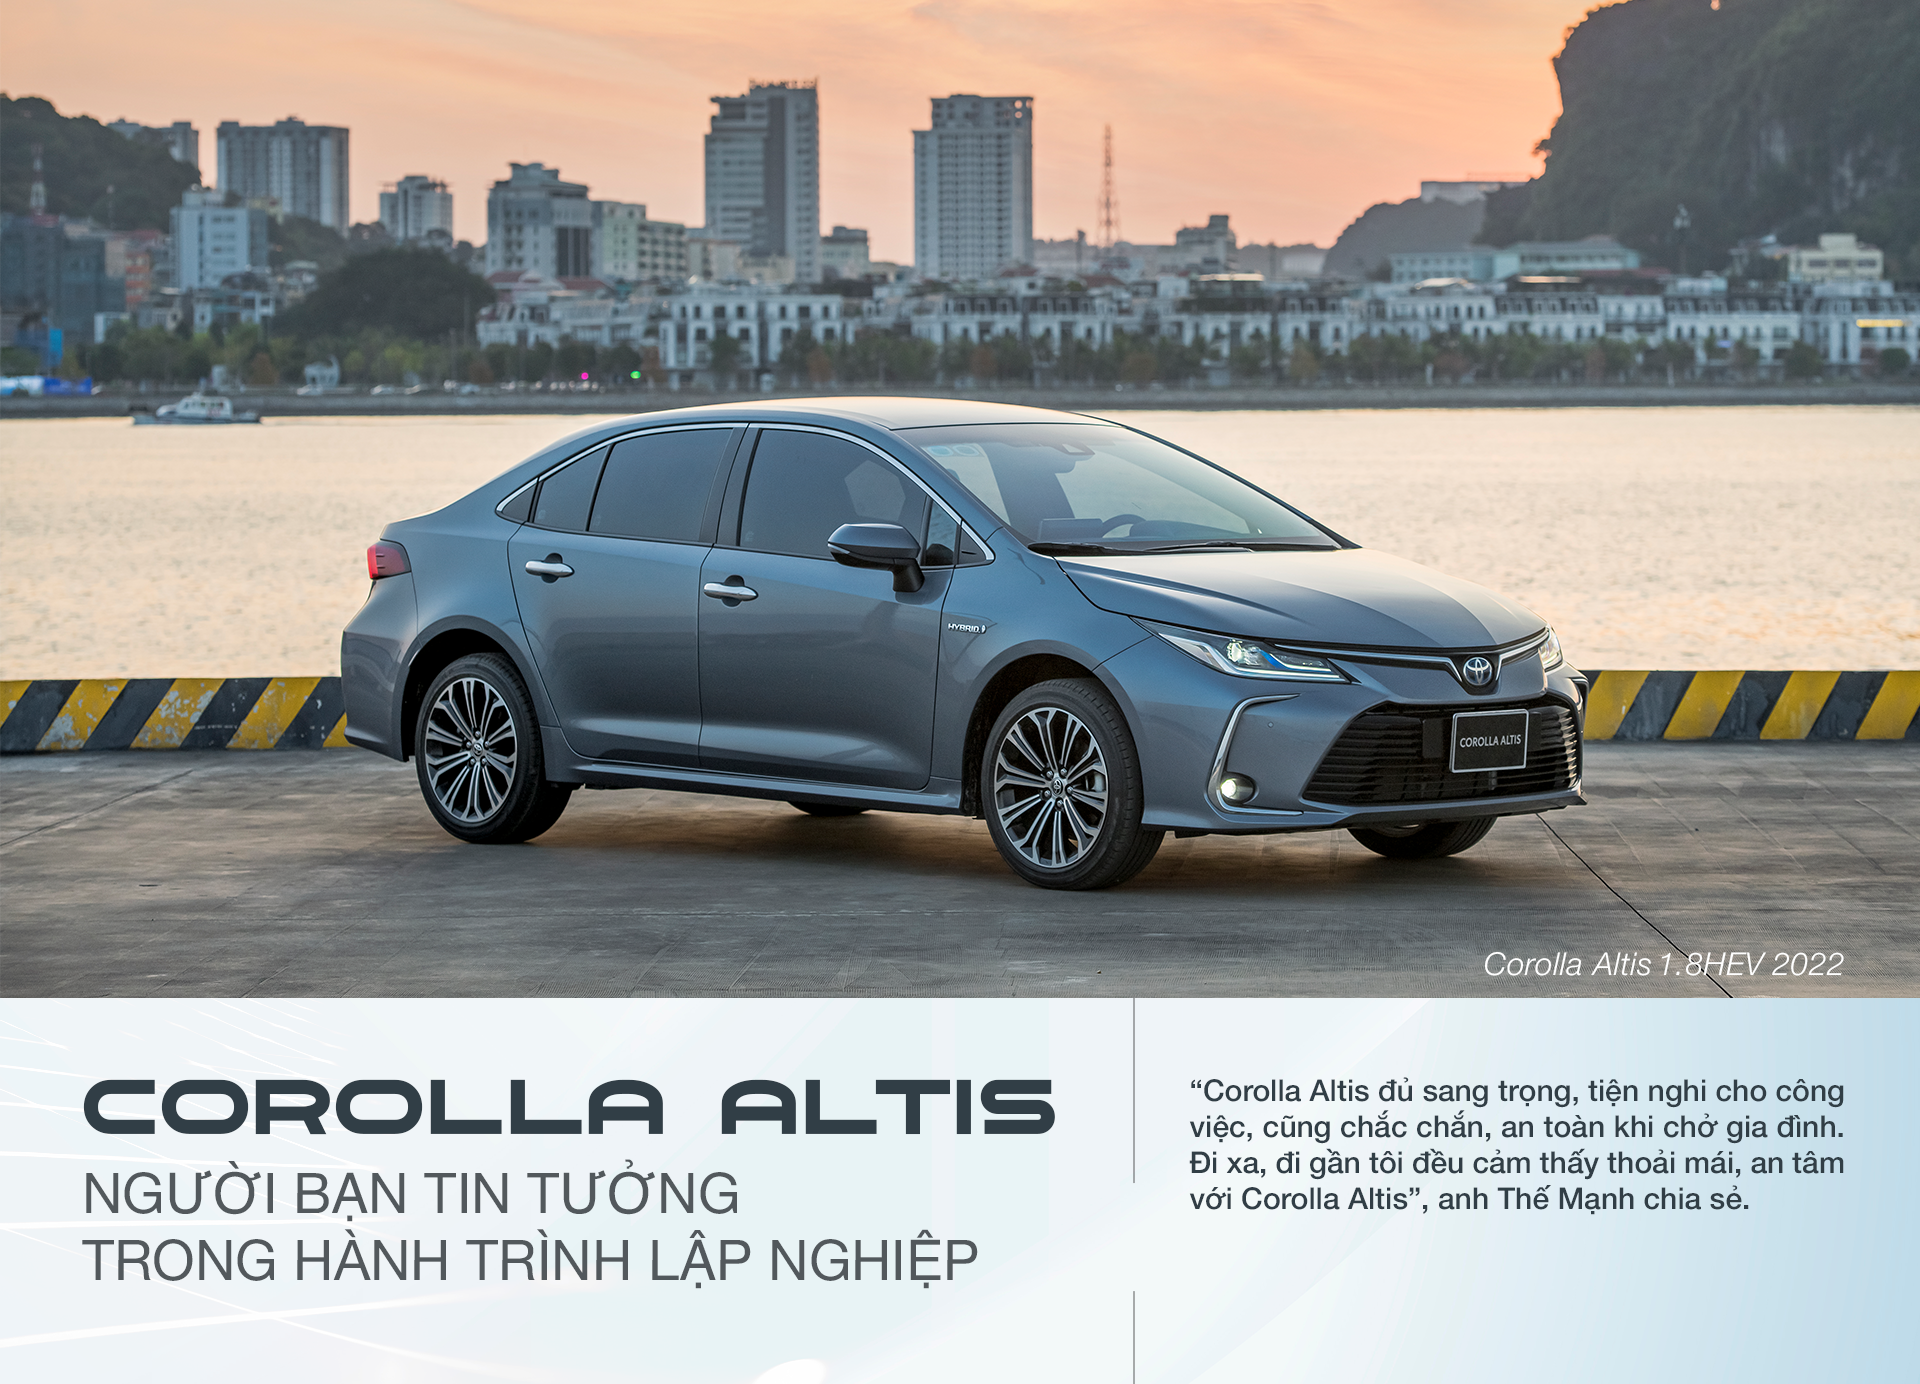 Toyota Corolla Altis: Người bạn tin tưởng trong hành trình lập nghiệp